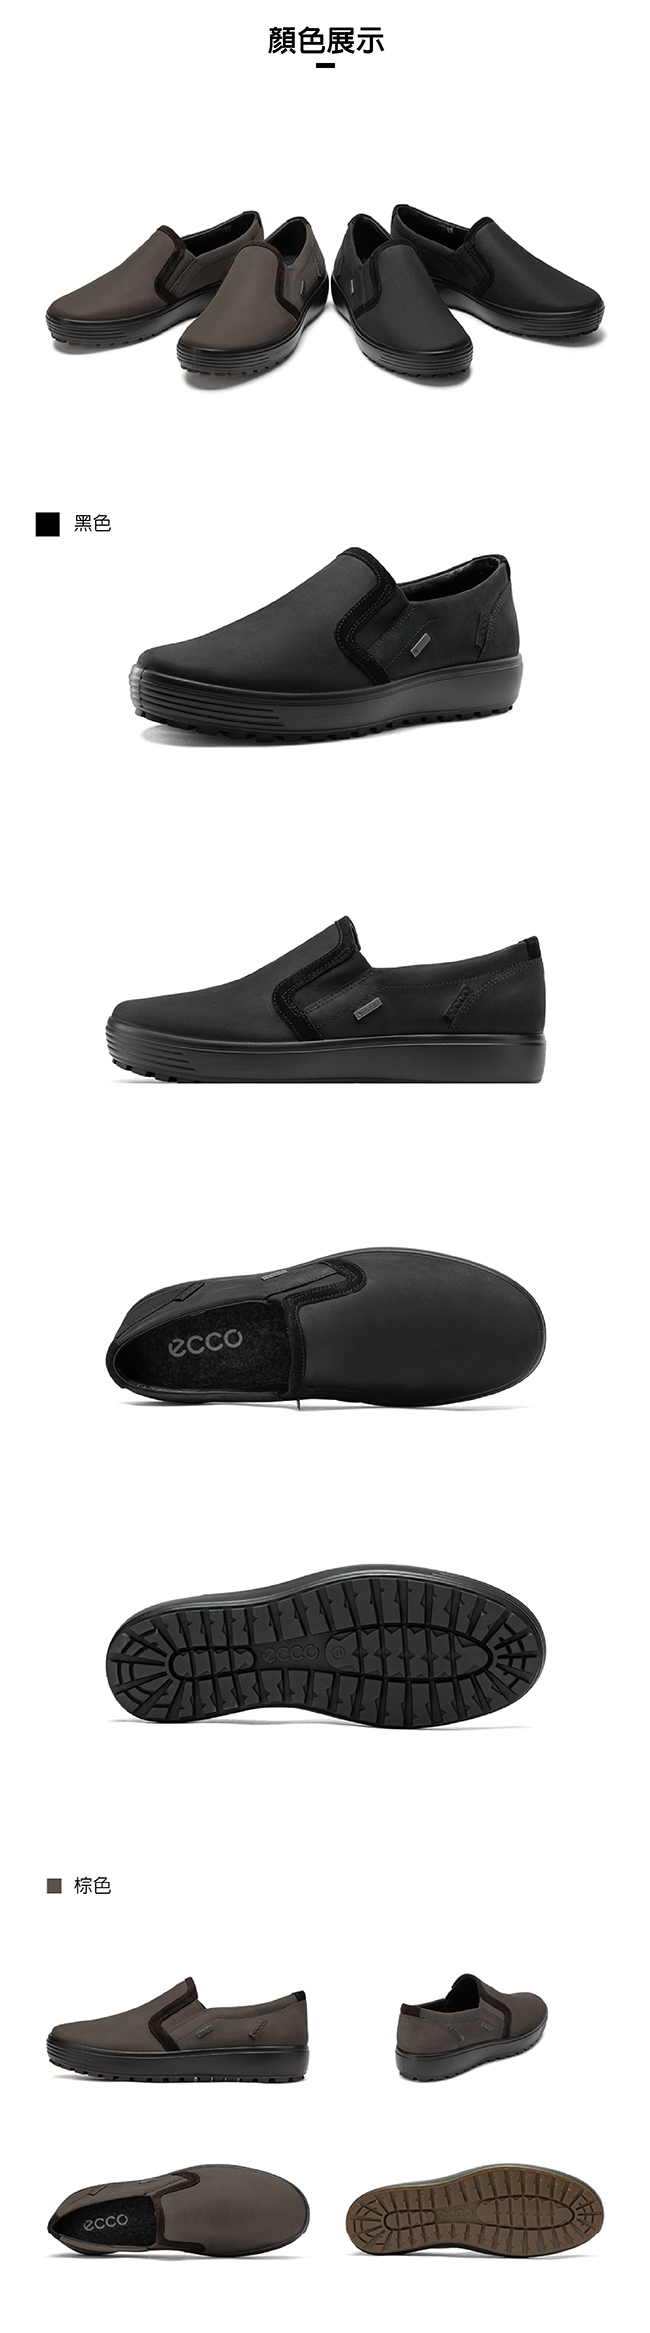 ECCO SOFT 7 TRED M 舒適防水套入式休閒鞋 男-棕色